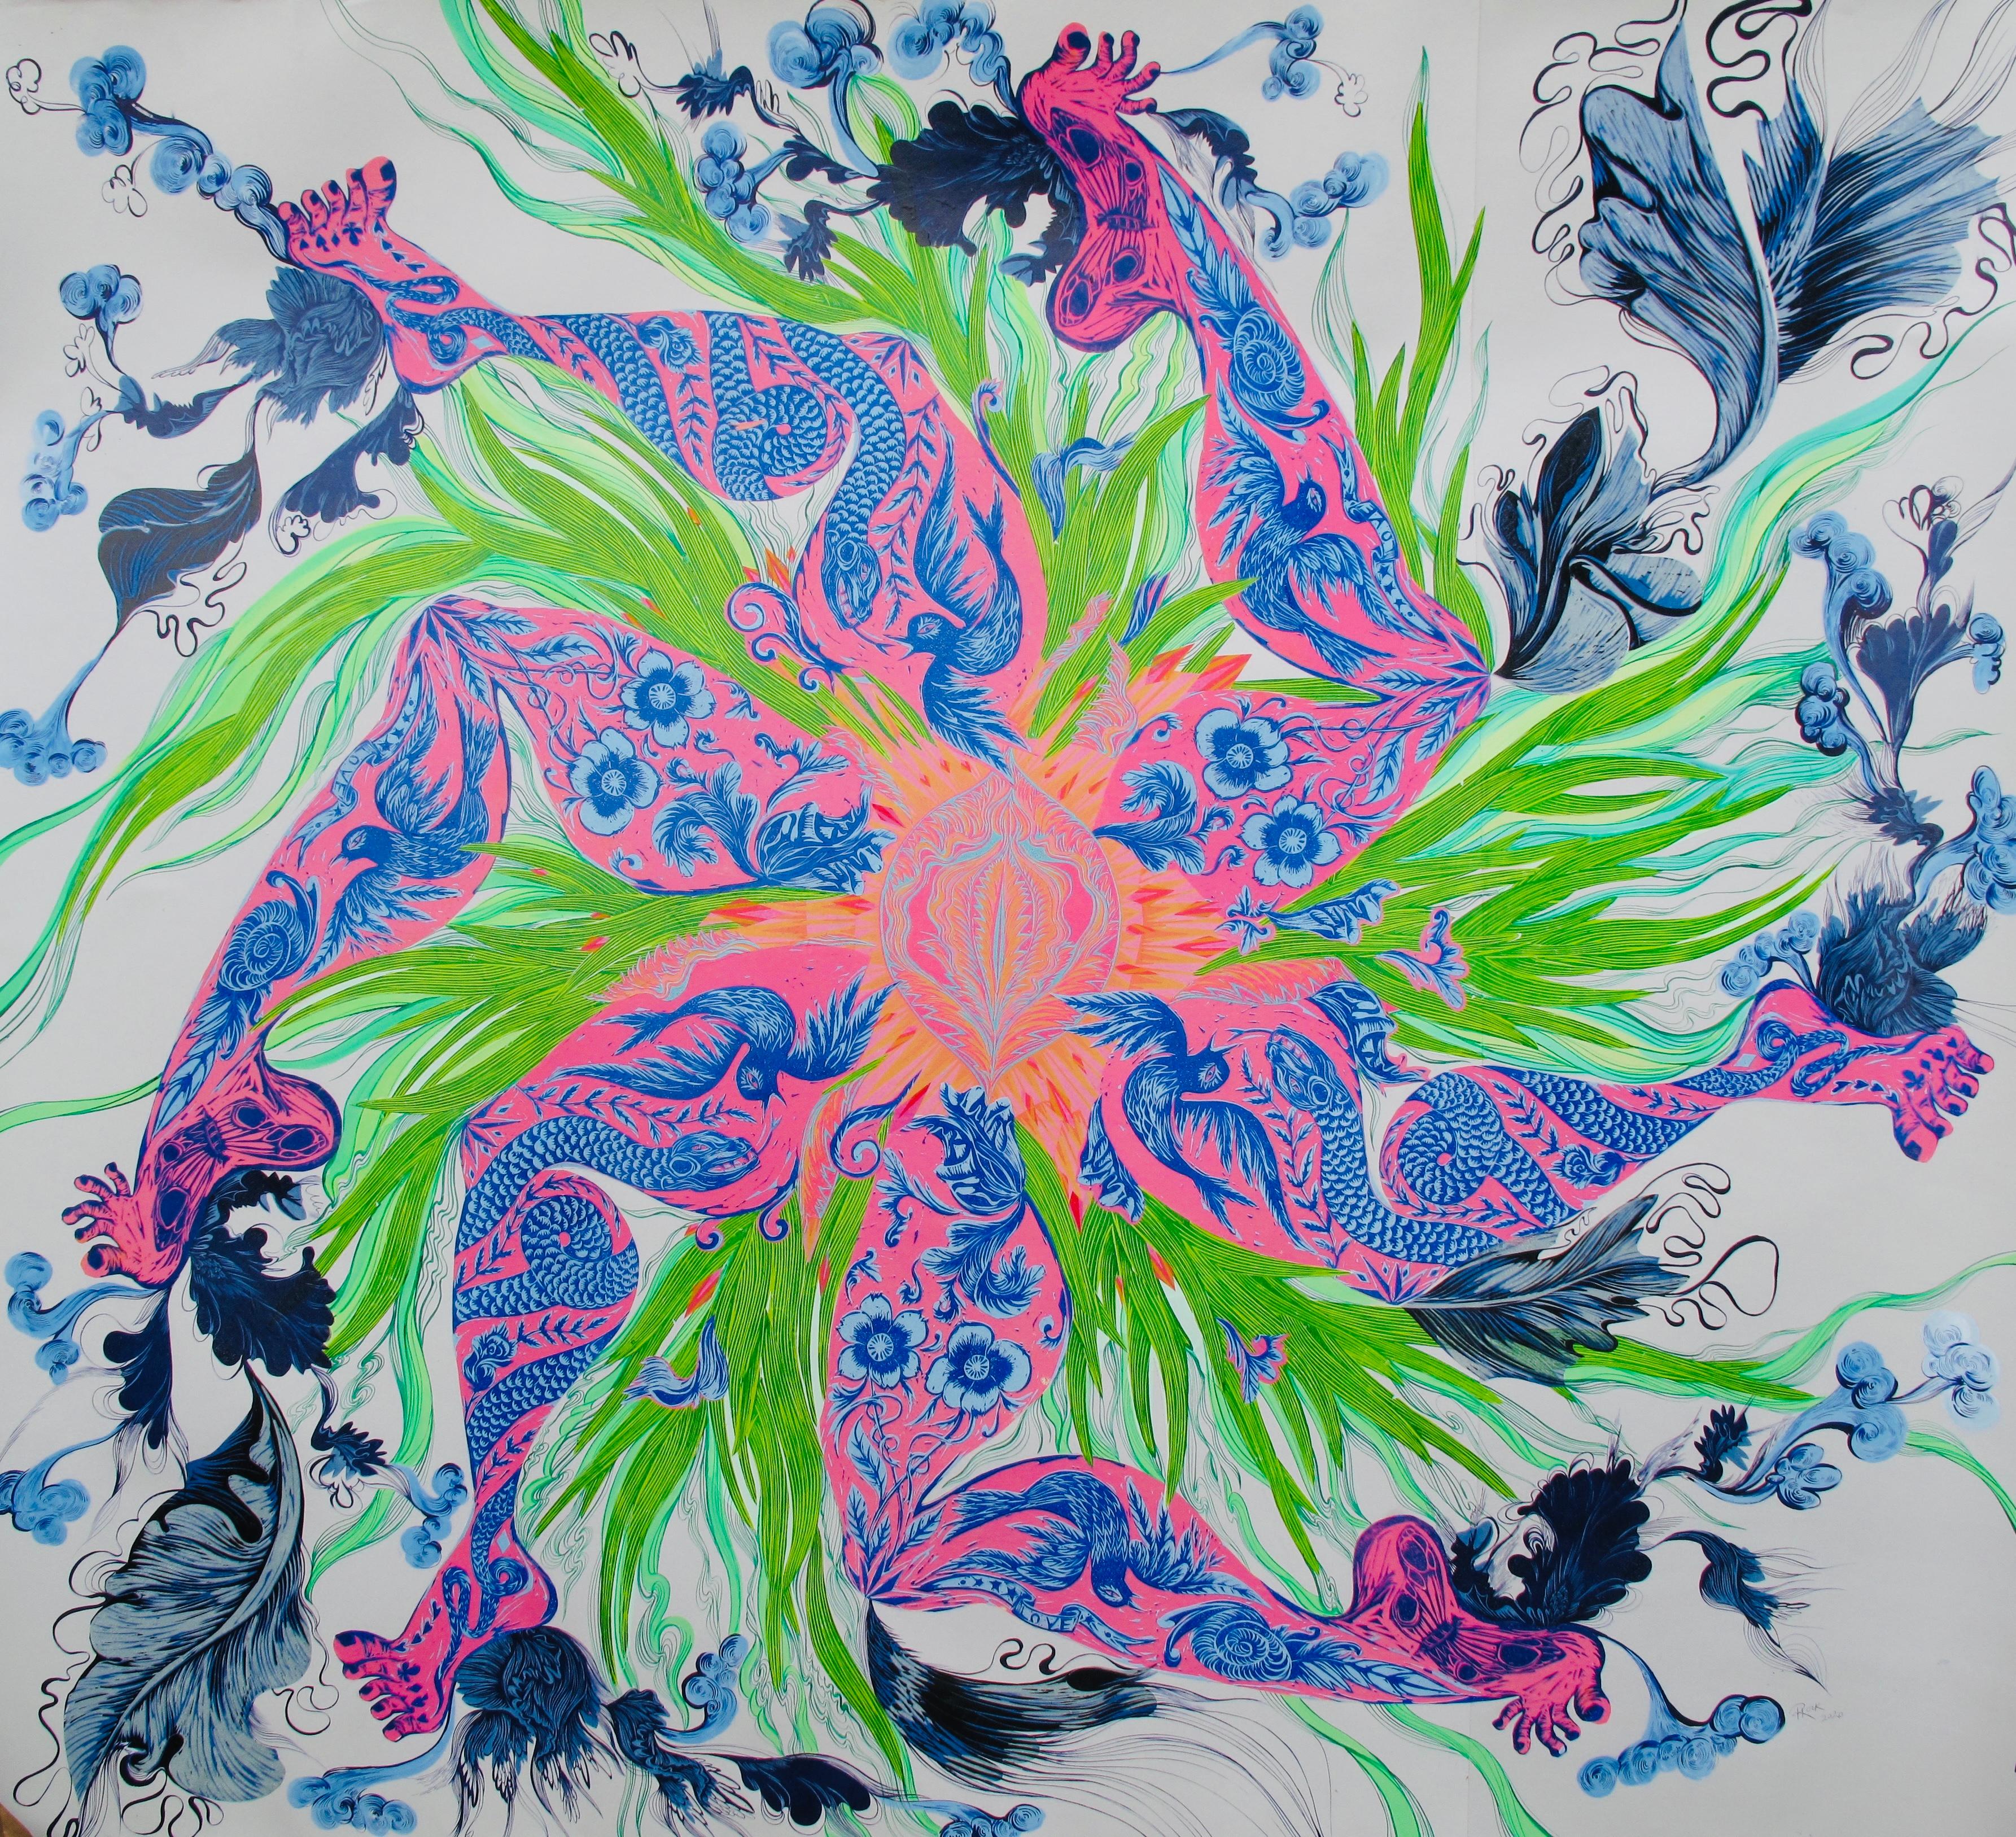  Grande peinture surréaliste du Royal College of Art LGBTQ+ Femme artiste bleu rose 